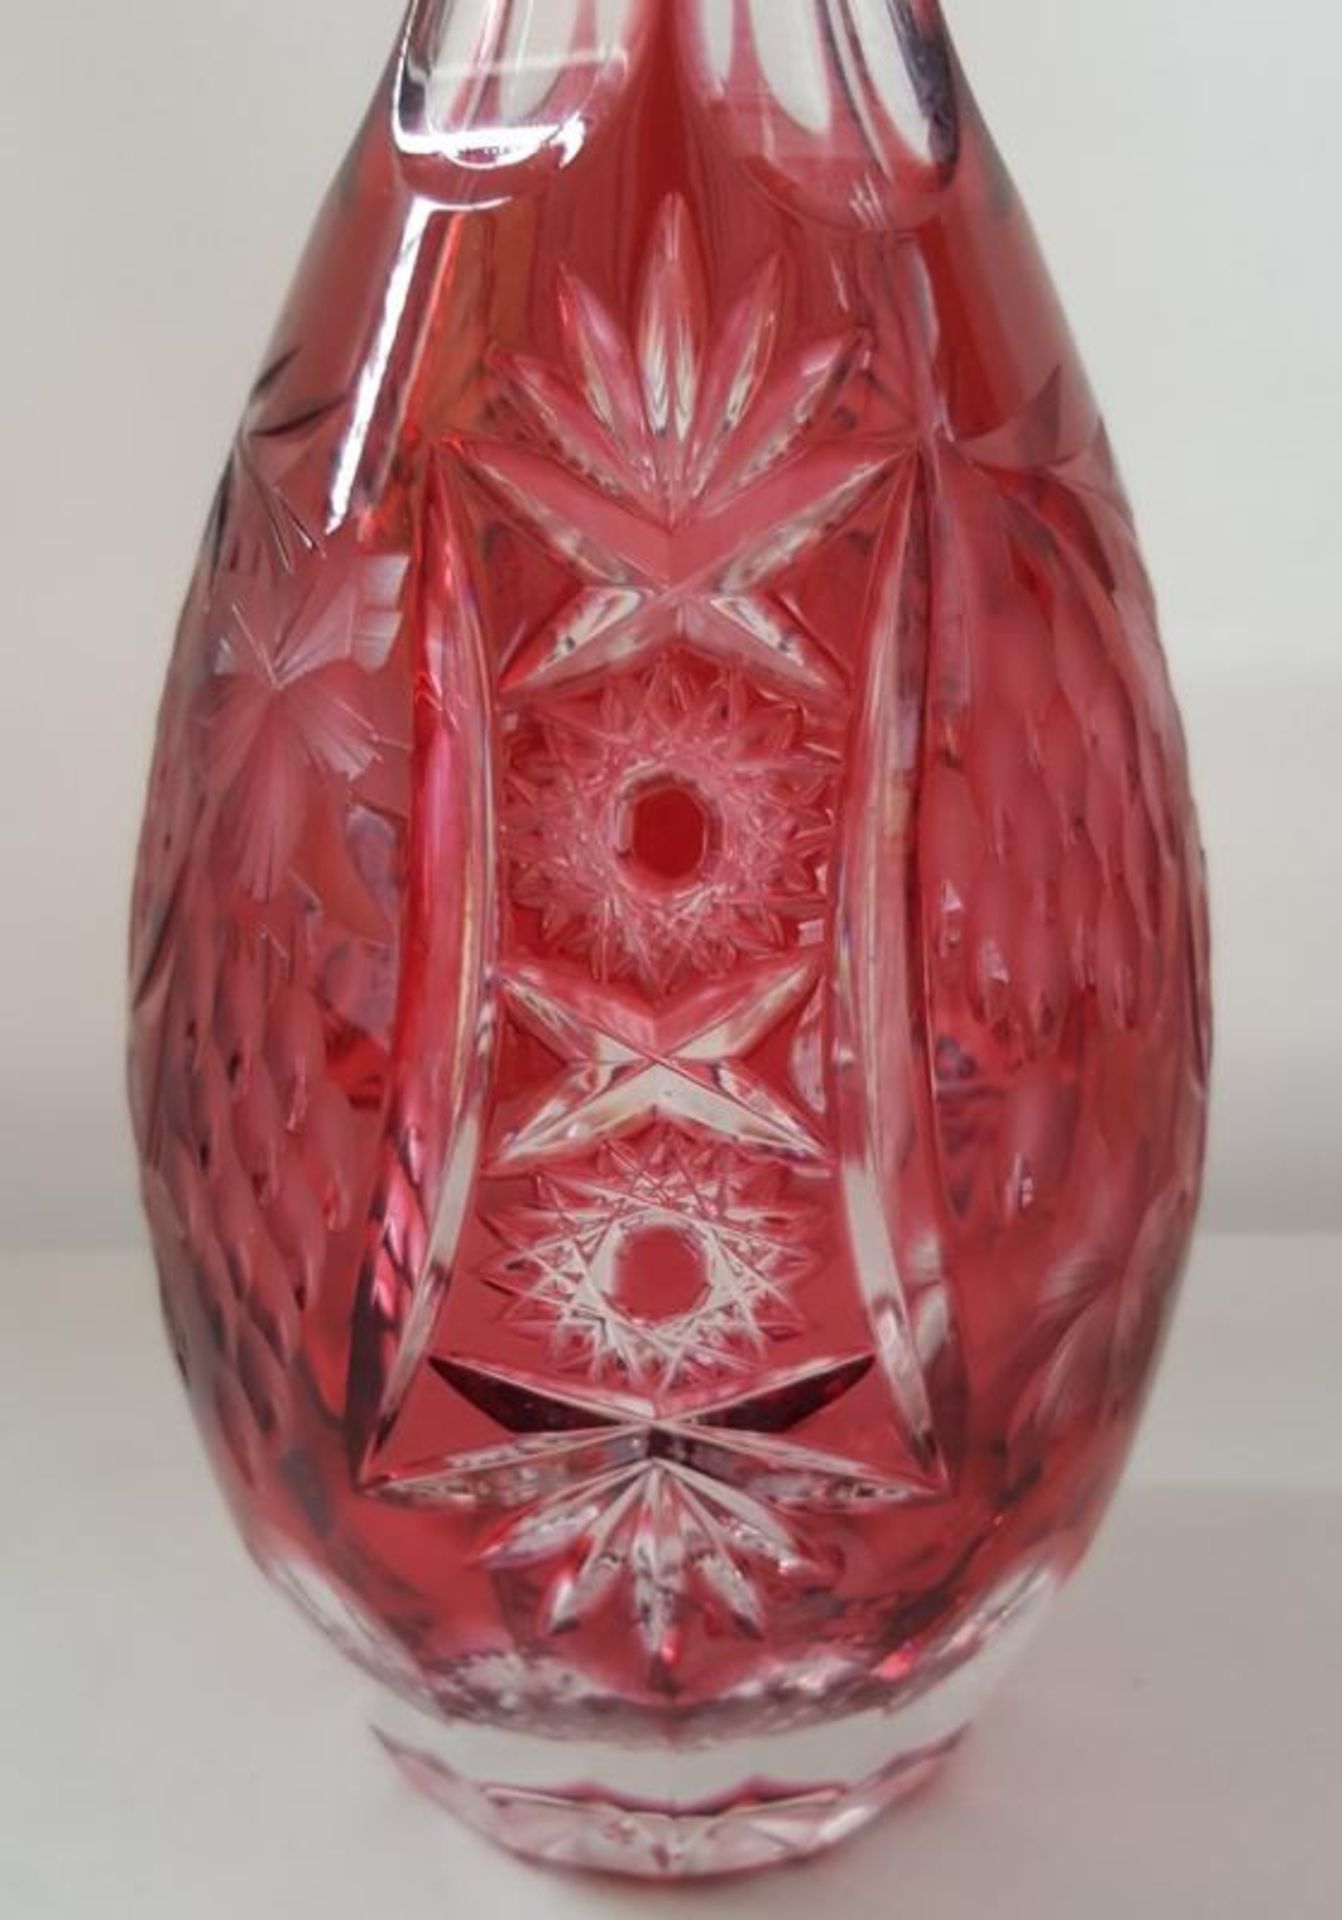 1 x Bohemian Antique Cranberry Cut Glass Decanter H39cm - Ref RB289 E - CL334 - Location: Altrincham - Image 3 of 4